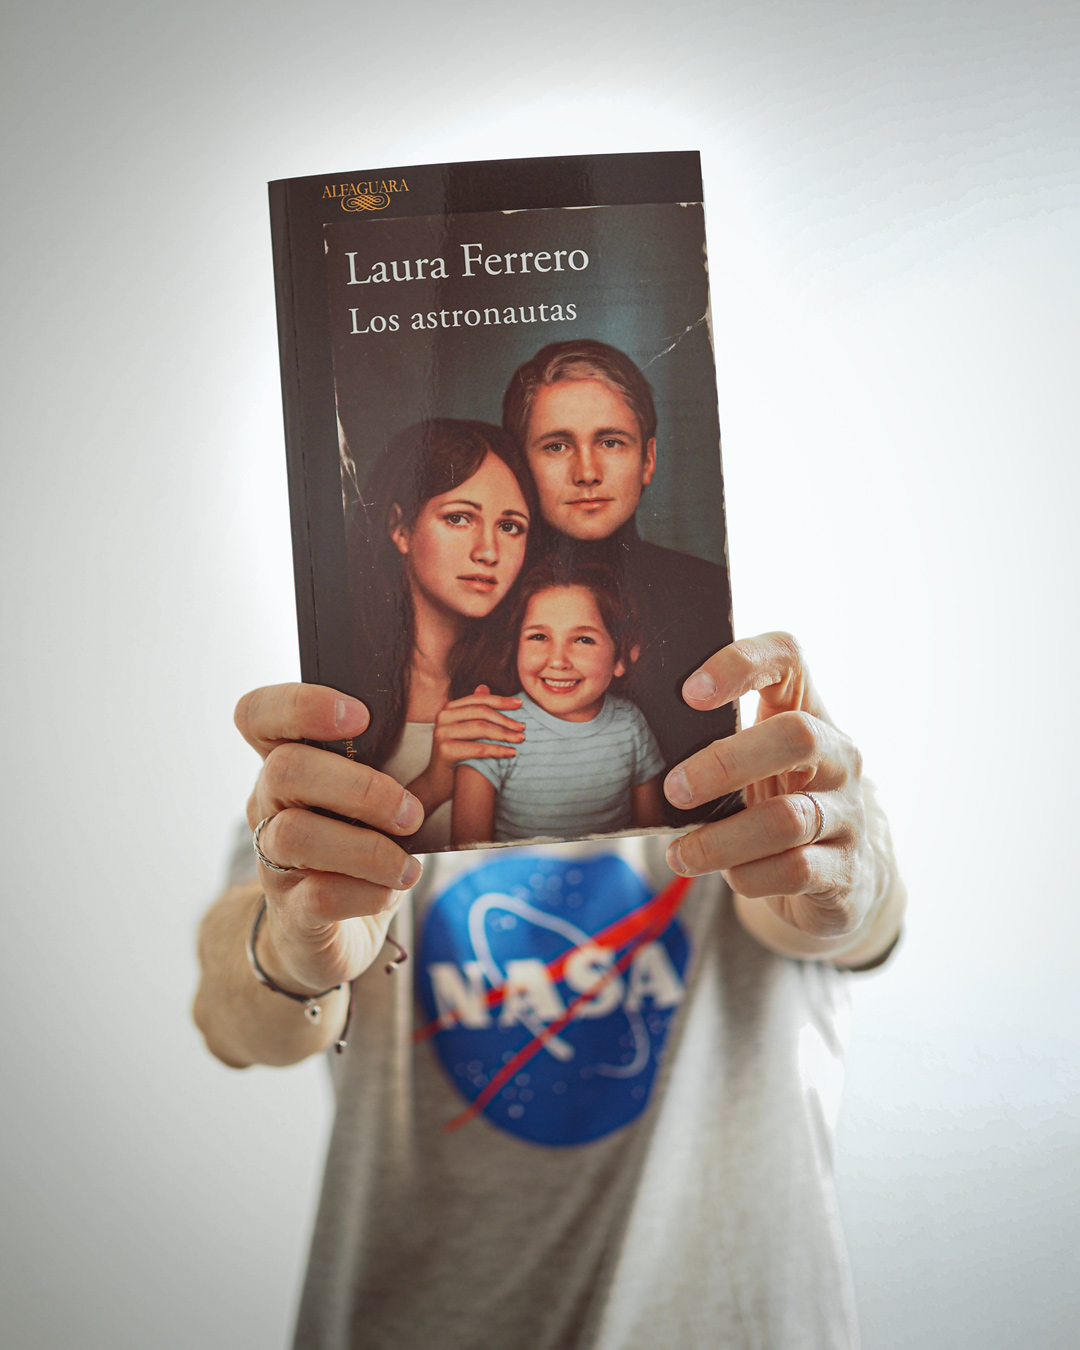 Los Astronautas — Laura Ferrero / Astronauts by Laura Ferrero